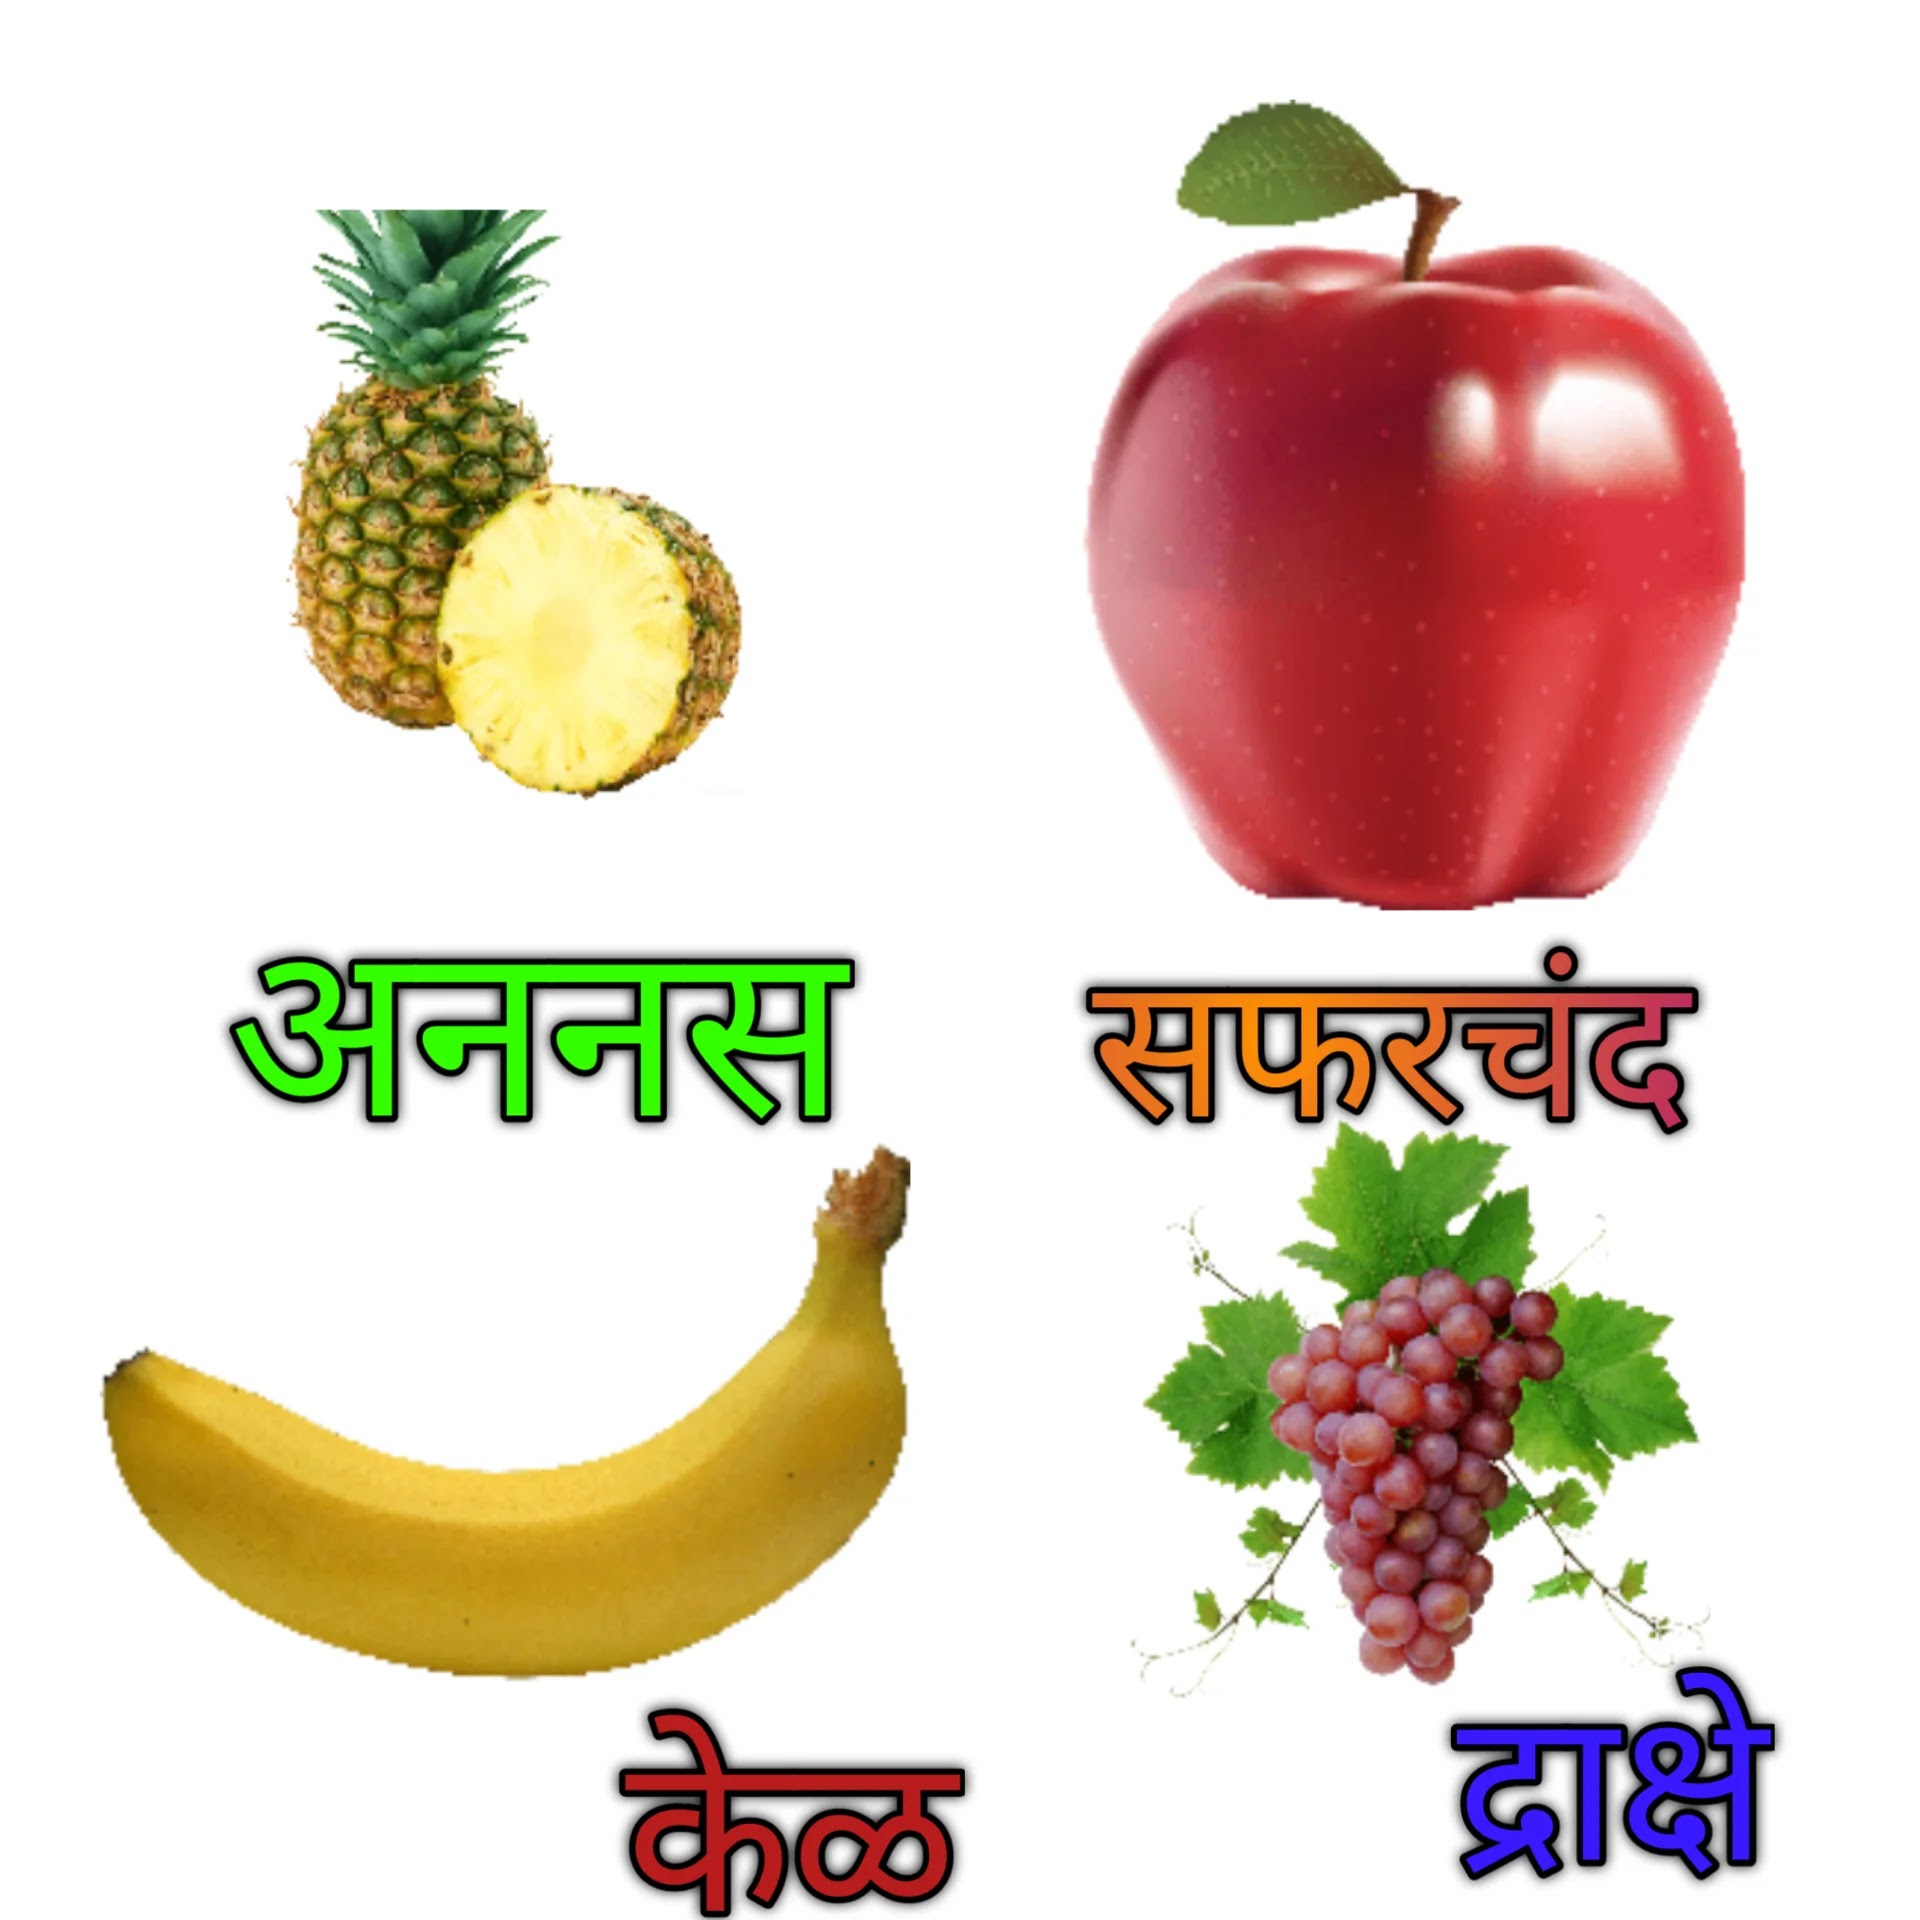 Fruits names marathi, fruits images in Marathi,